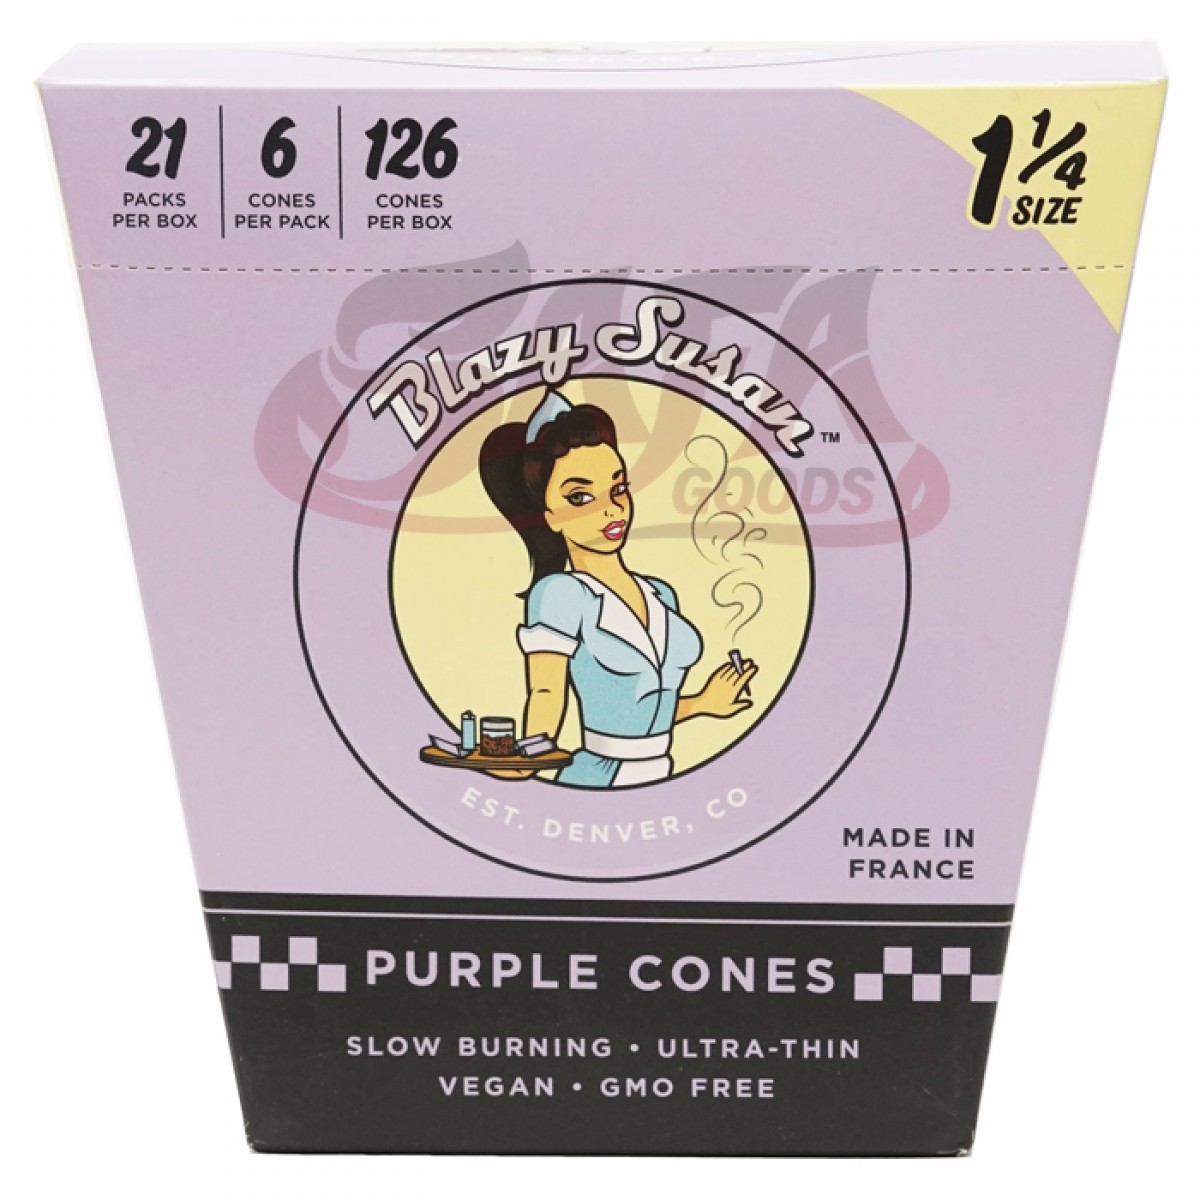 Blazy Susan - Purple Cones 1-1/4 - 21PC Display Box